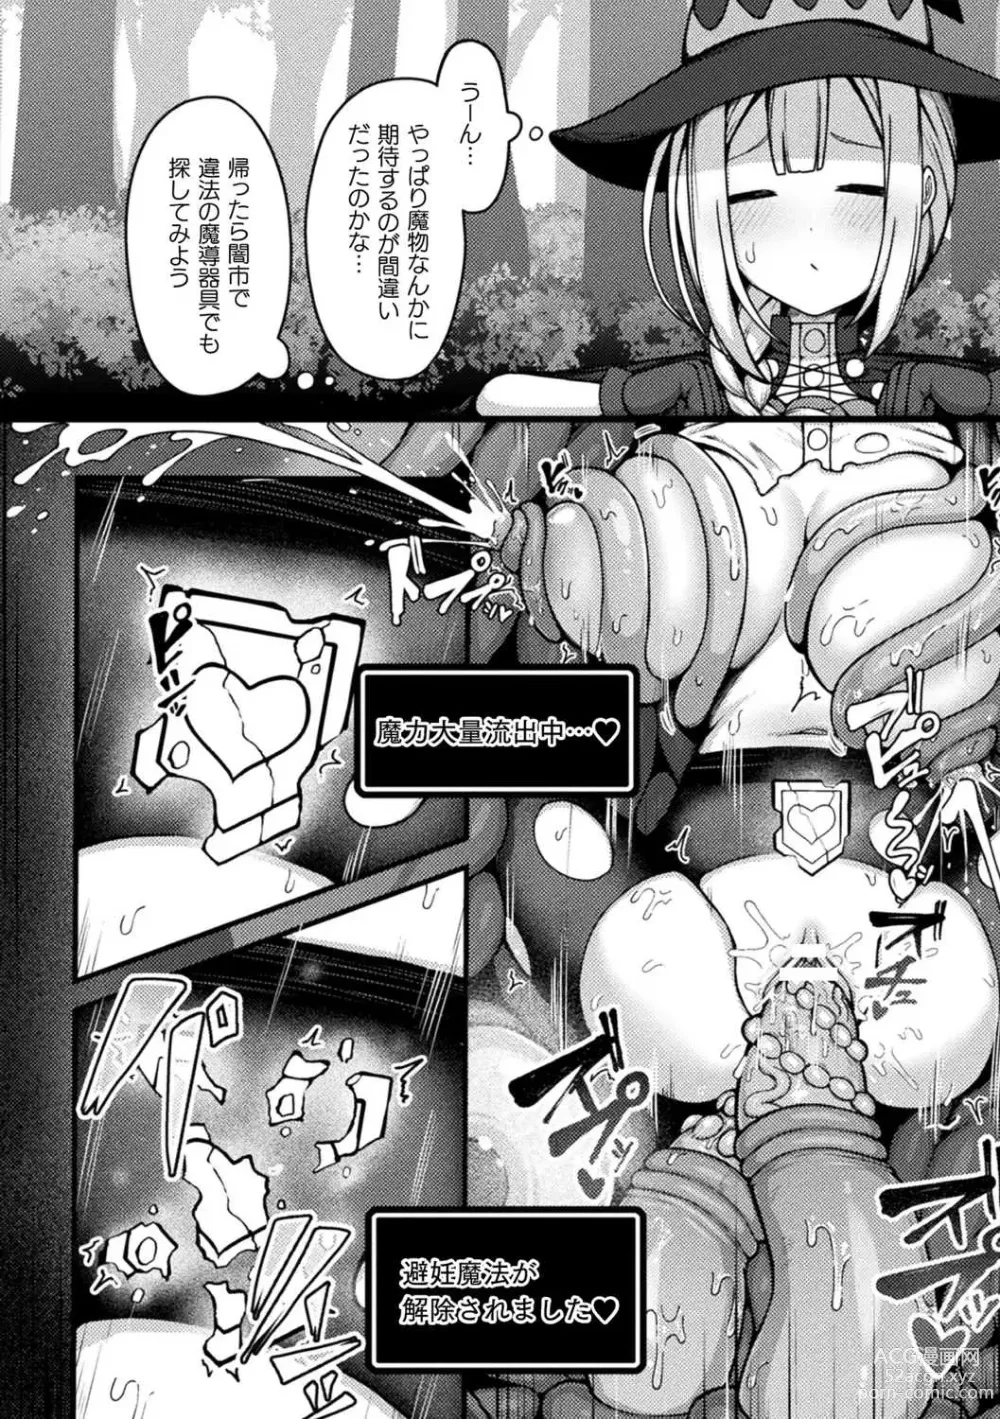 Page 6 of manga Fukan-shō nayamu mahō tsukai chan ka shokushu no sumu ana ni mizukara chiru hanashi